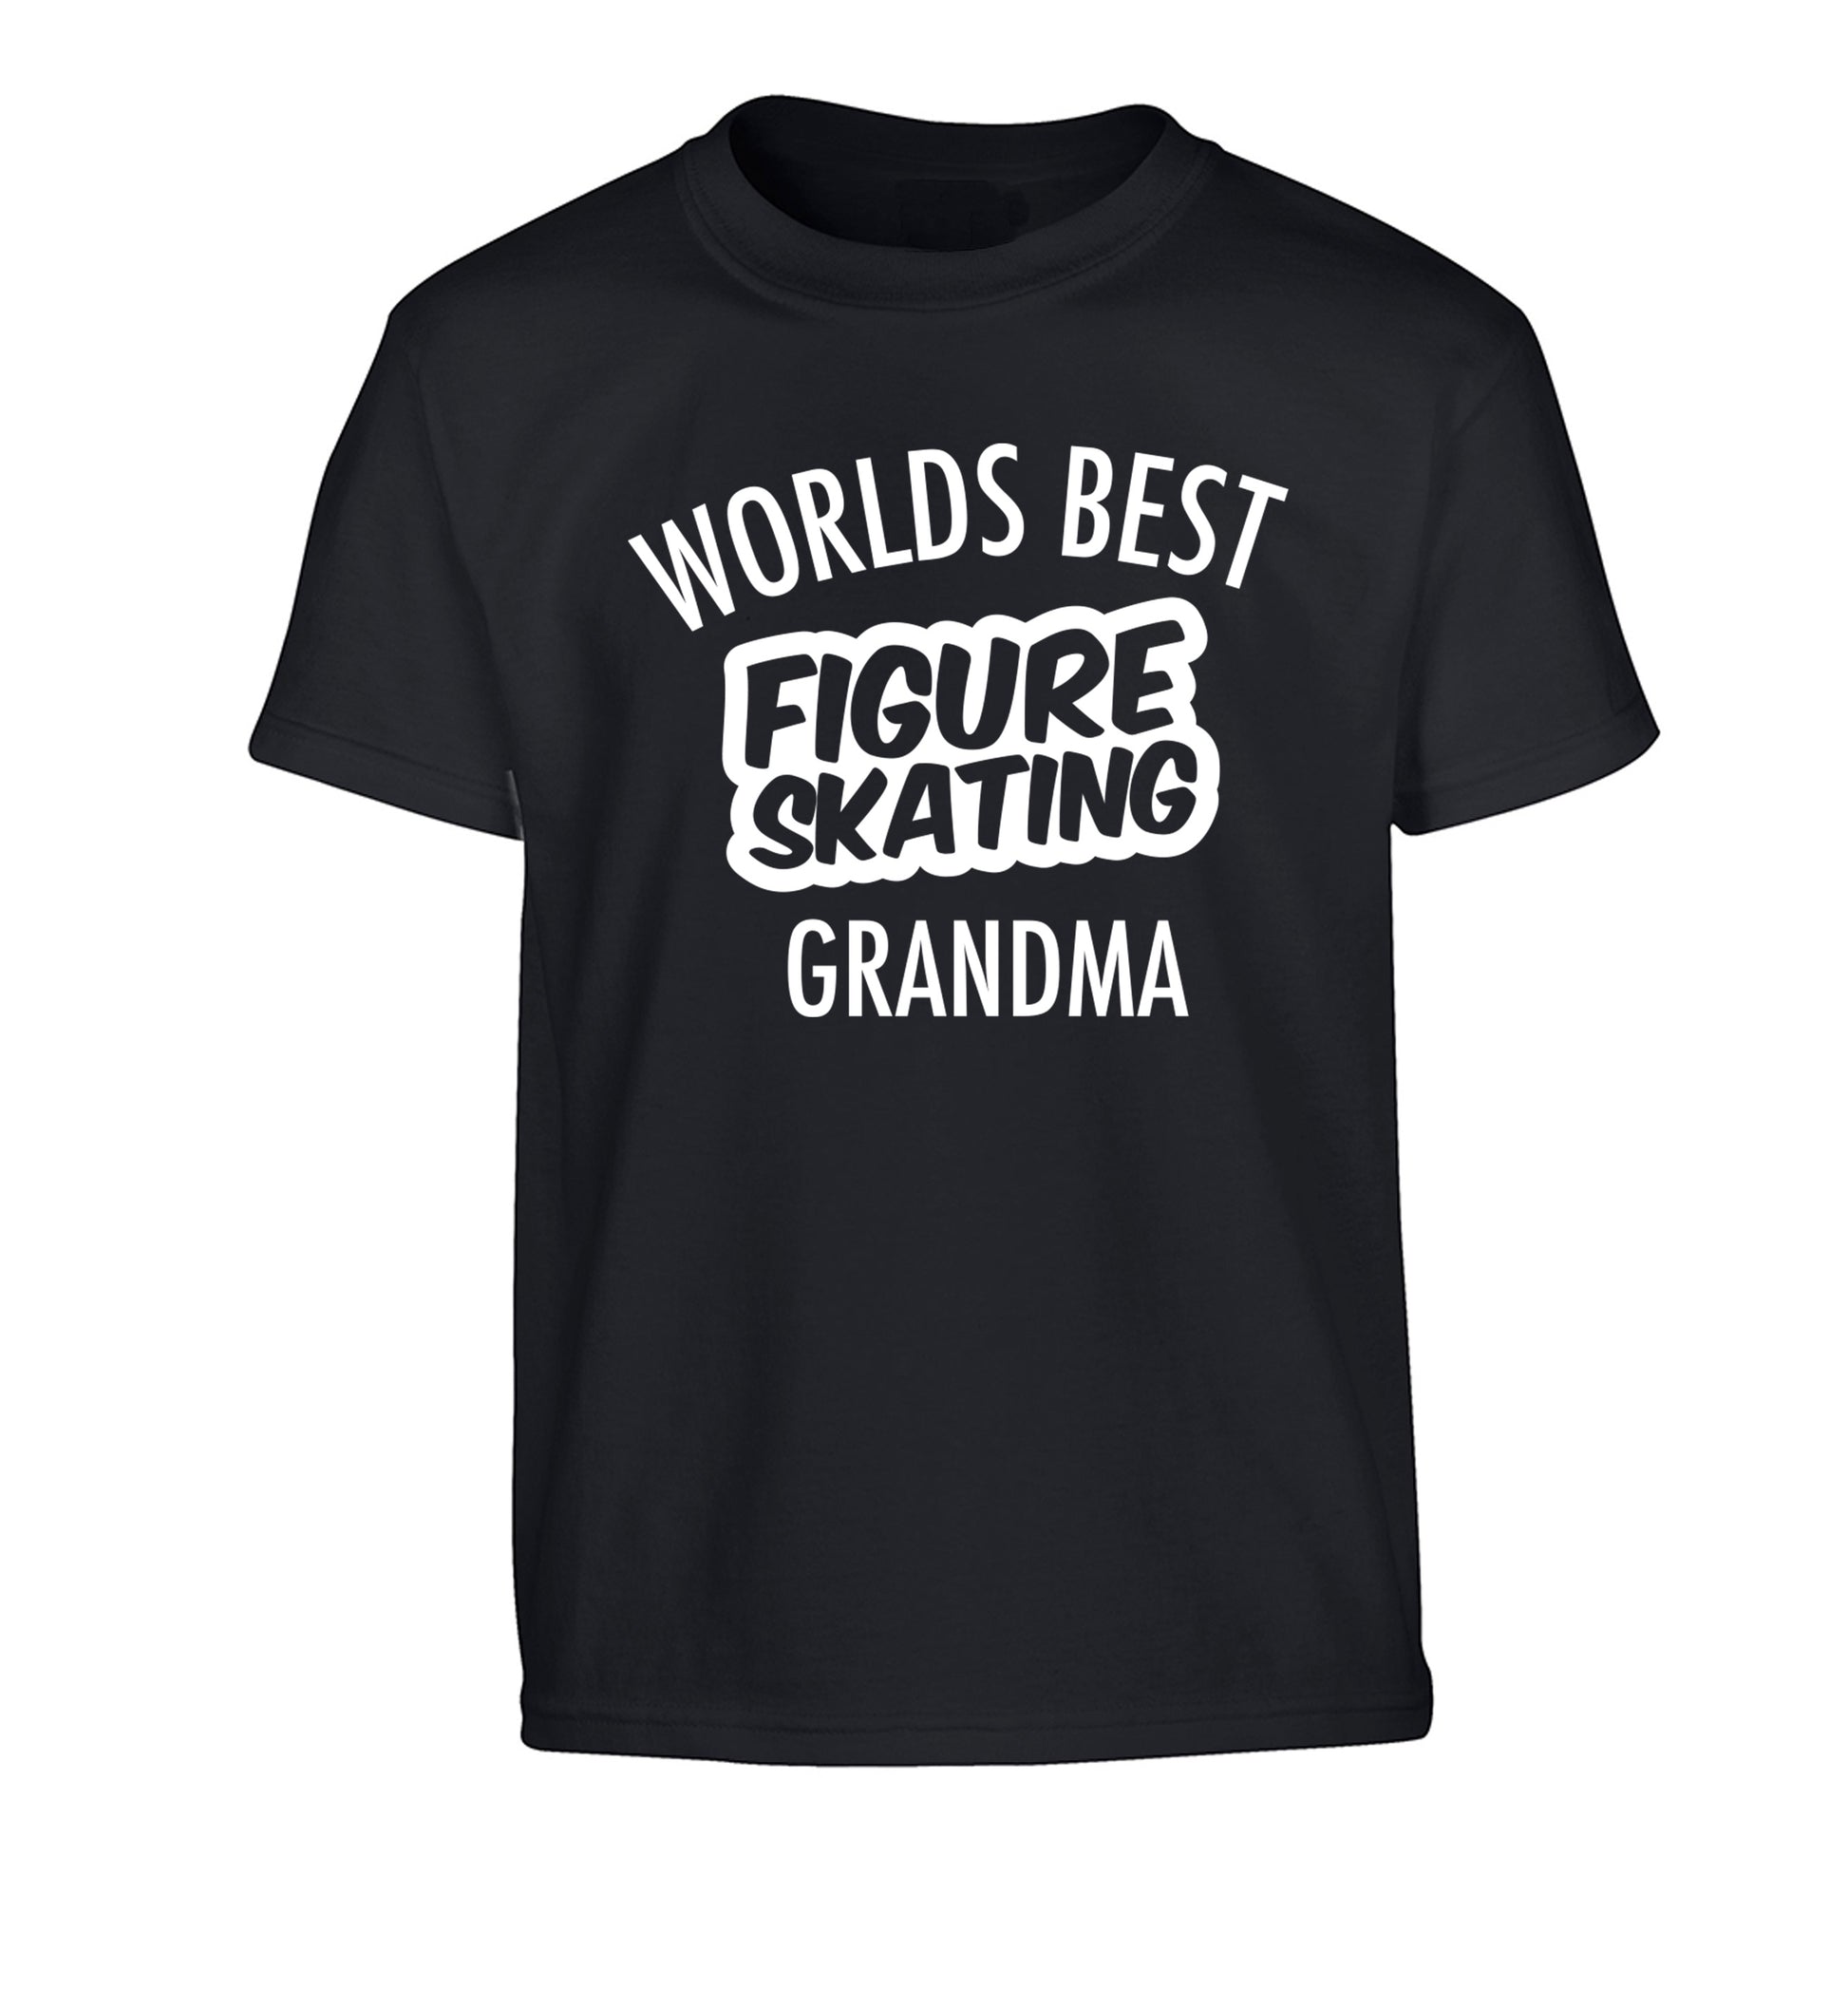 Worlds best figure skating grandma Children's black Tshirt 12-14 Years